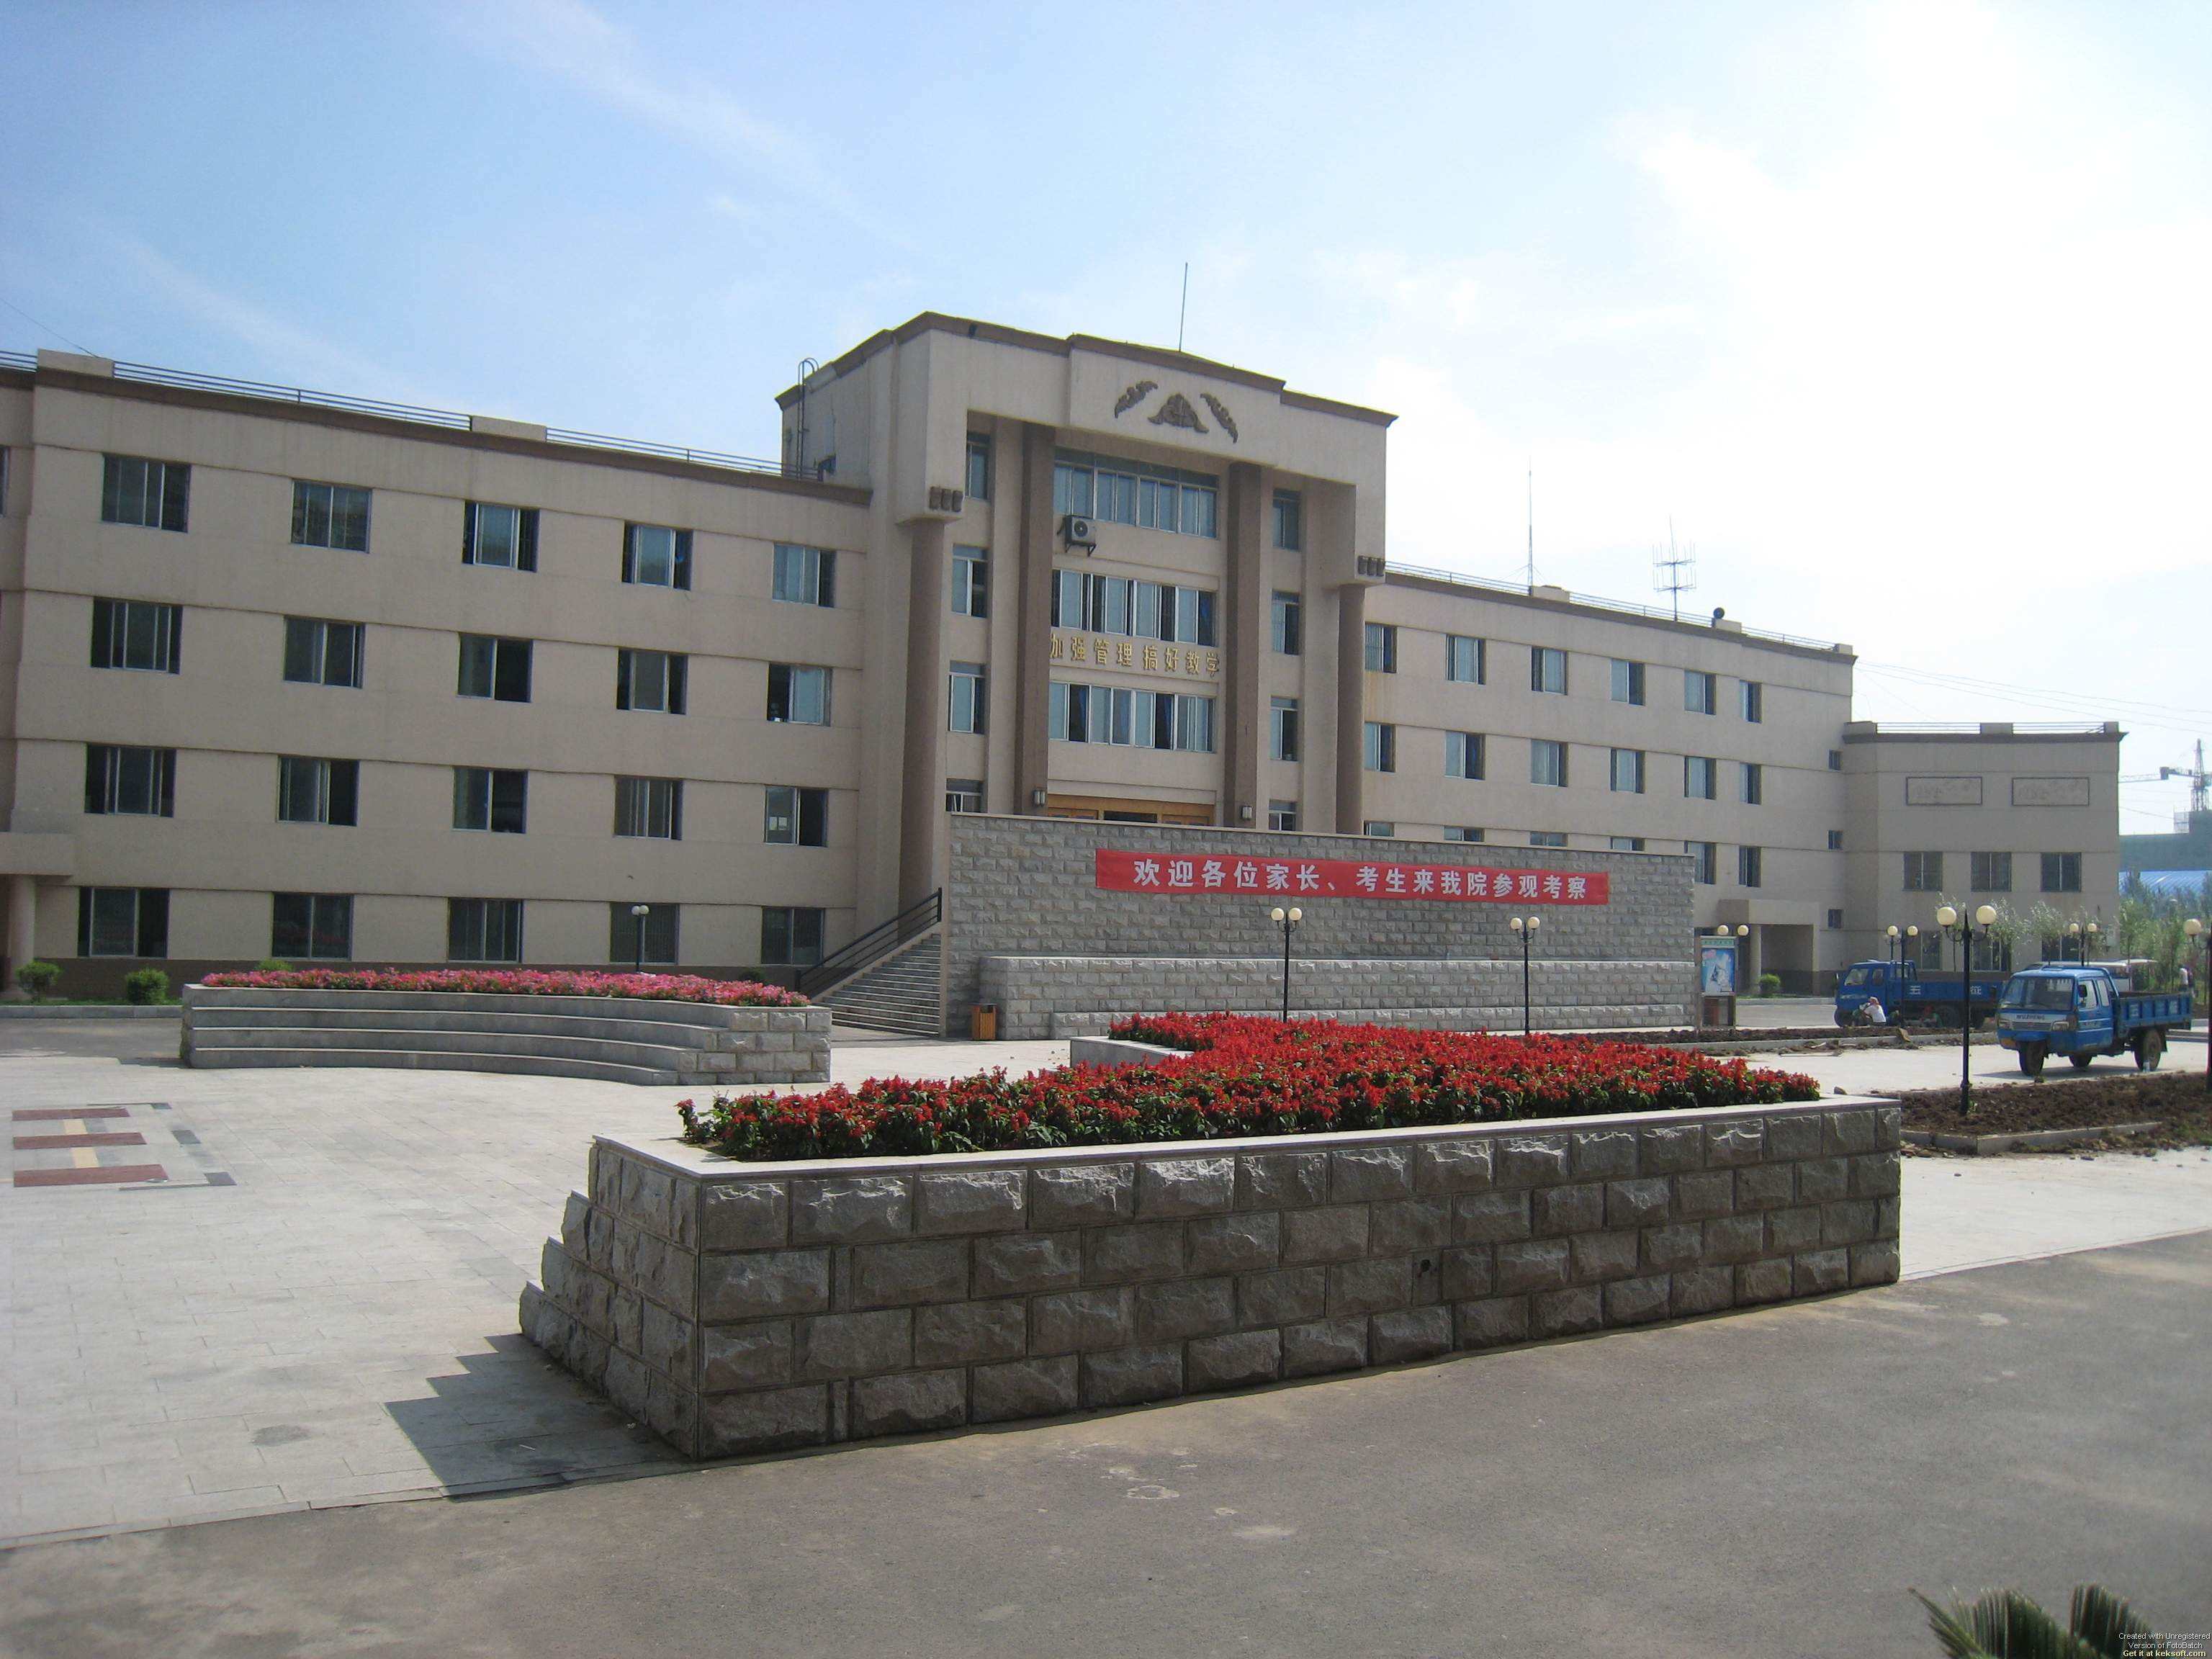 遼寧廣告職業學院校園風景